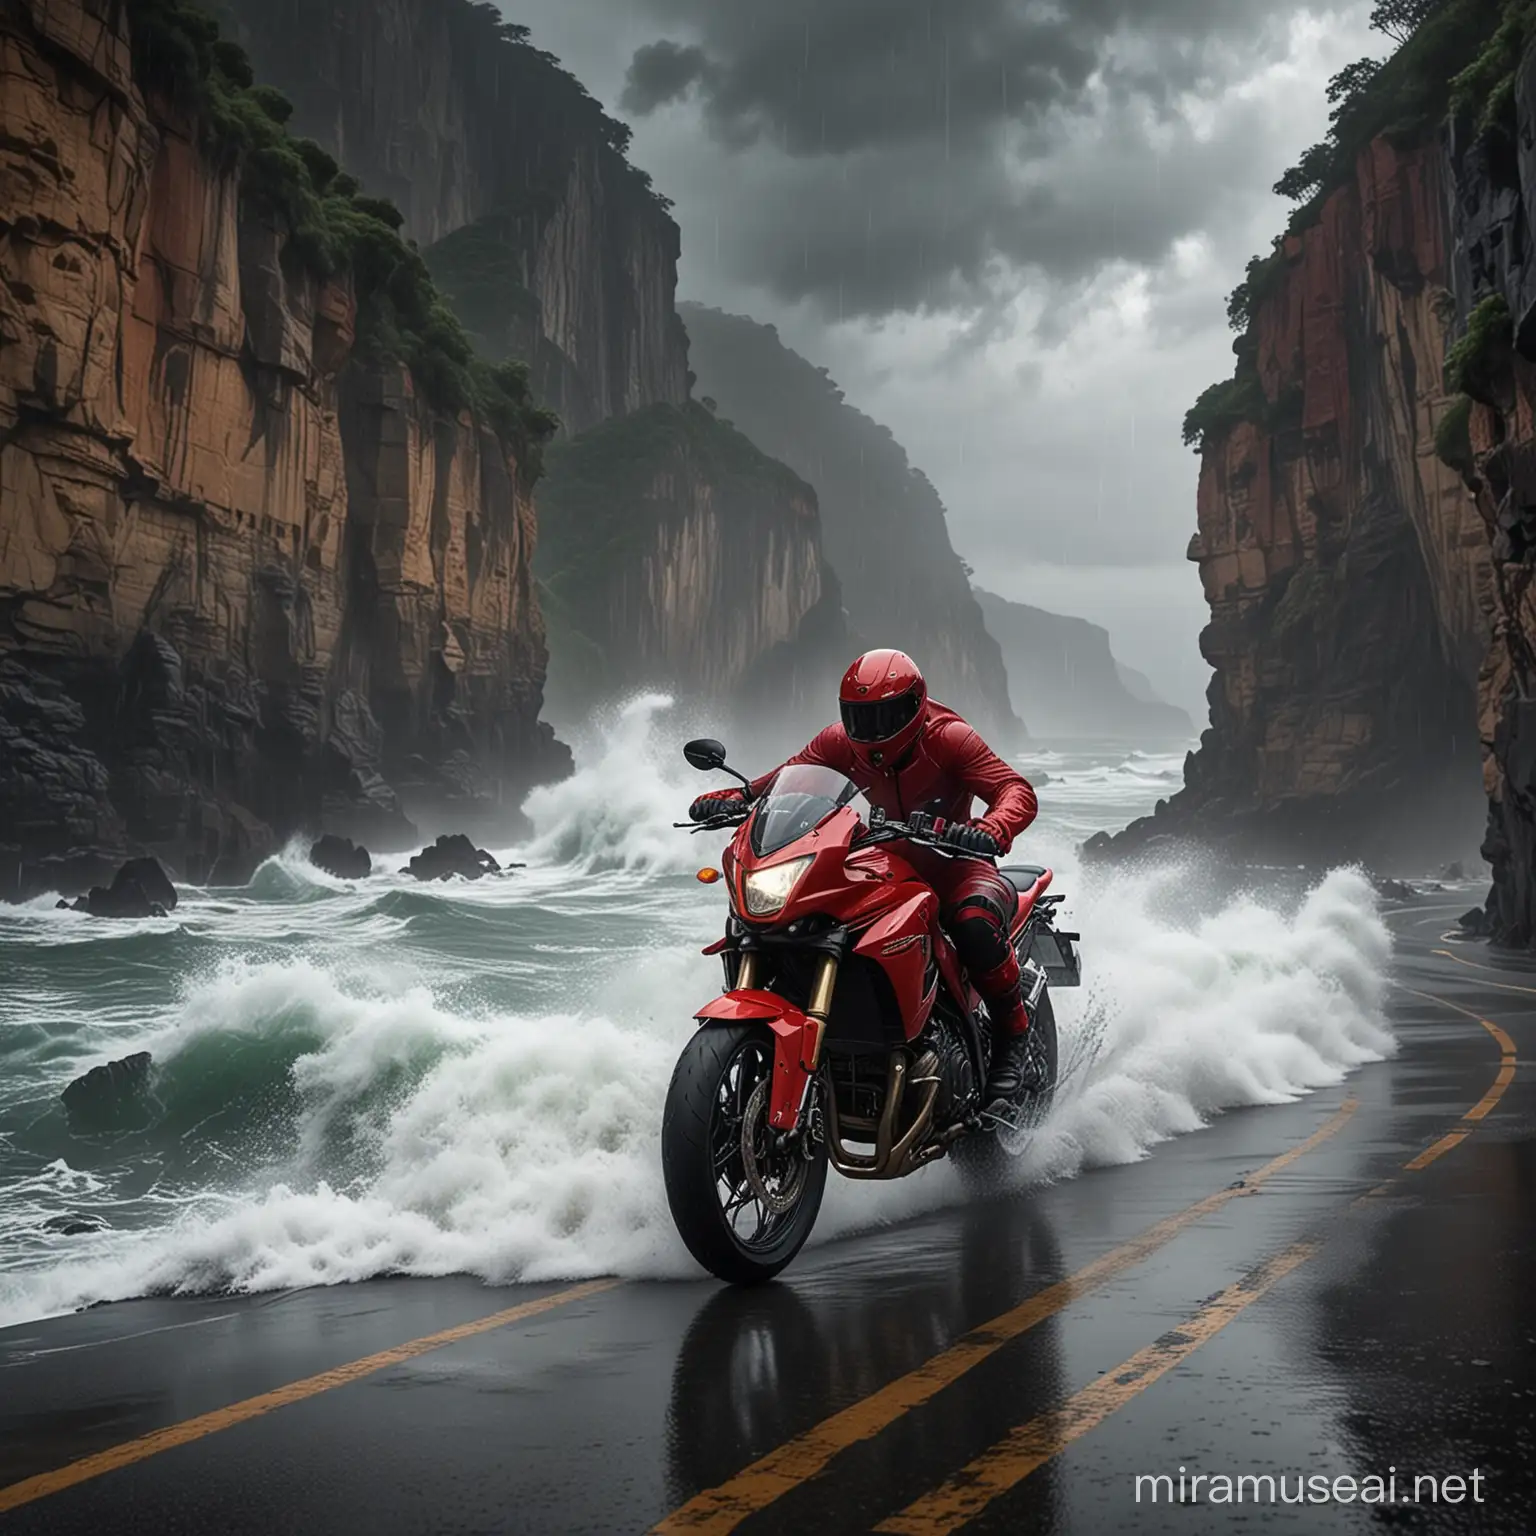 天上下着大暴雨，天气乌云密布，海浪拍打着悬崖，悬崖边的公路上，一辆摩托车正在疾速行驶，摩托车手穿着闪电侠红色服装
